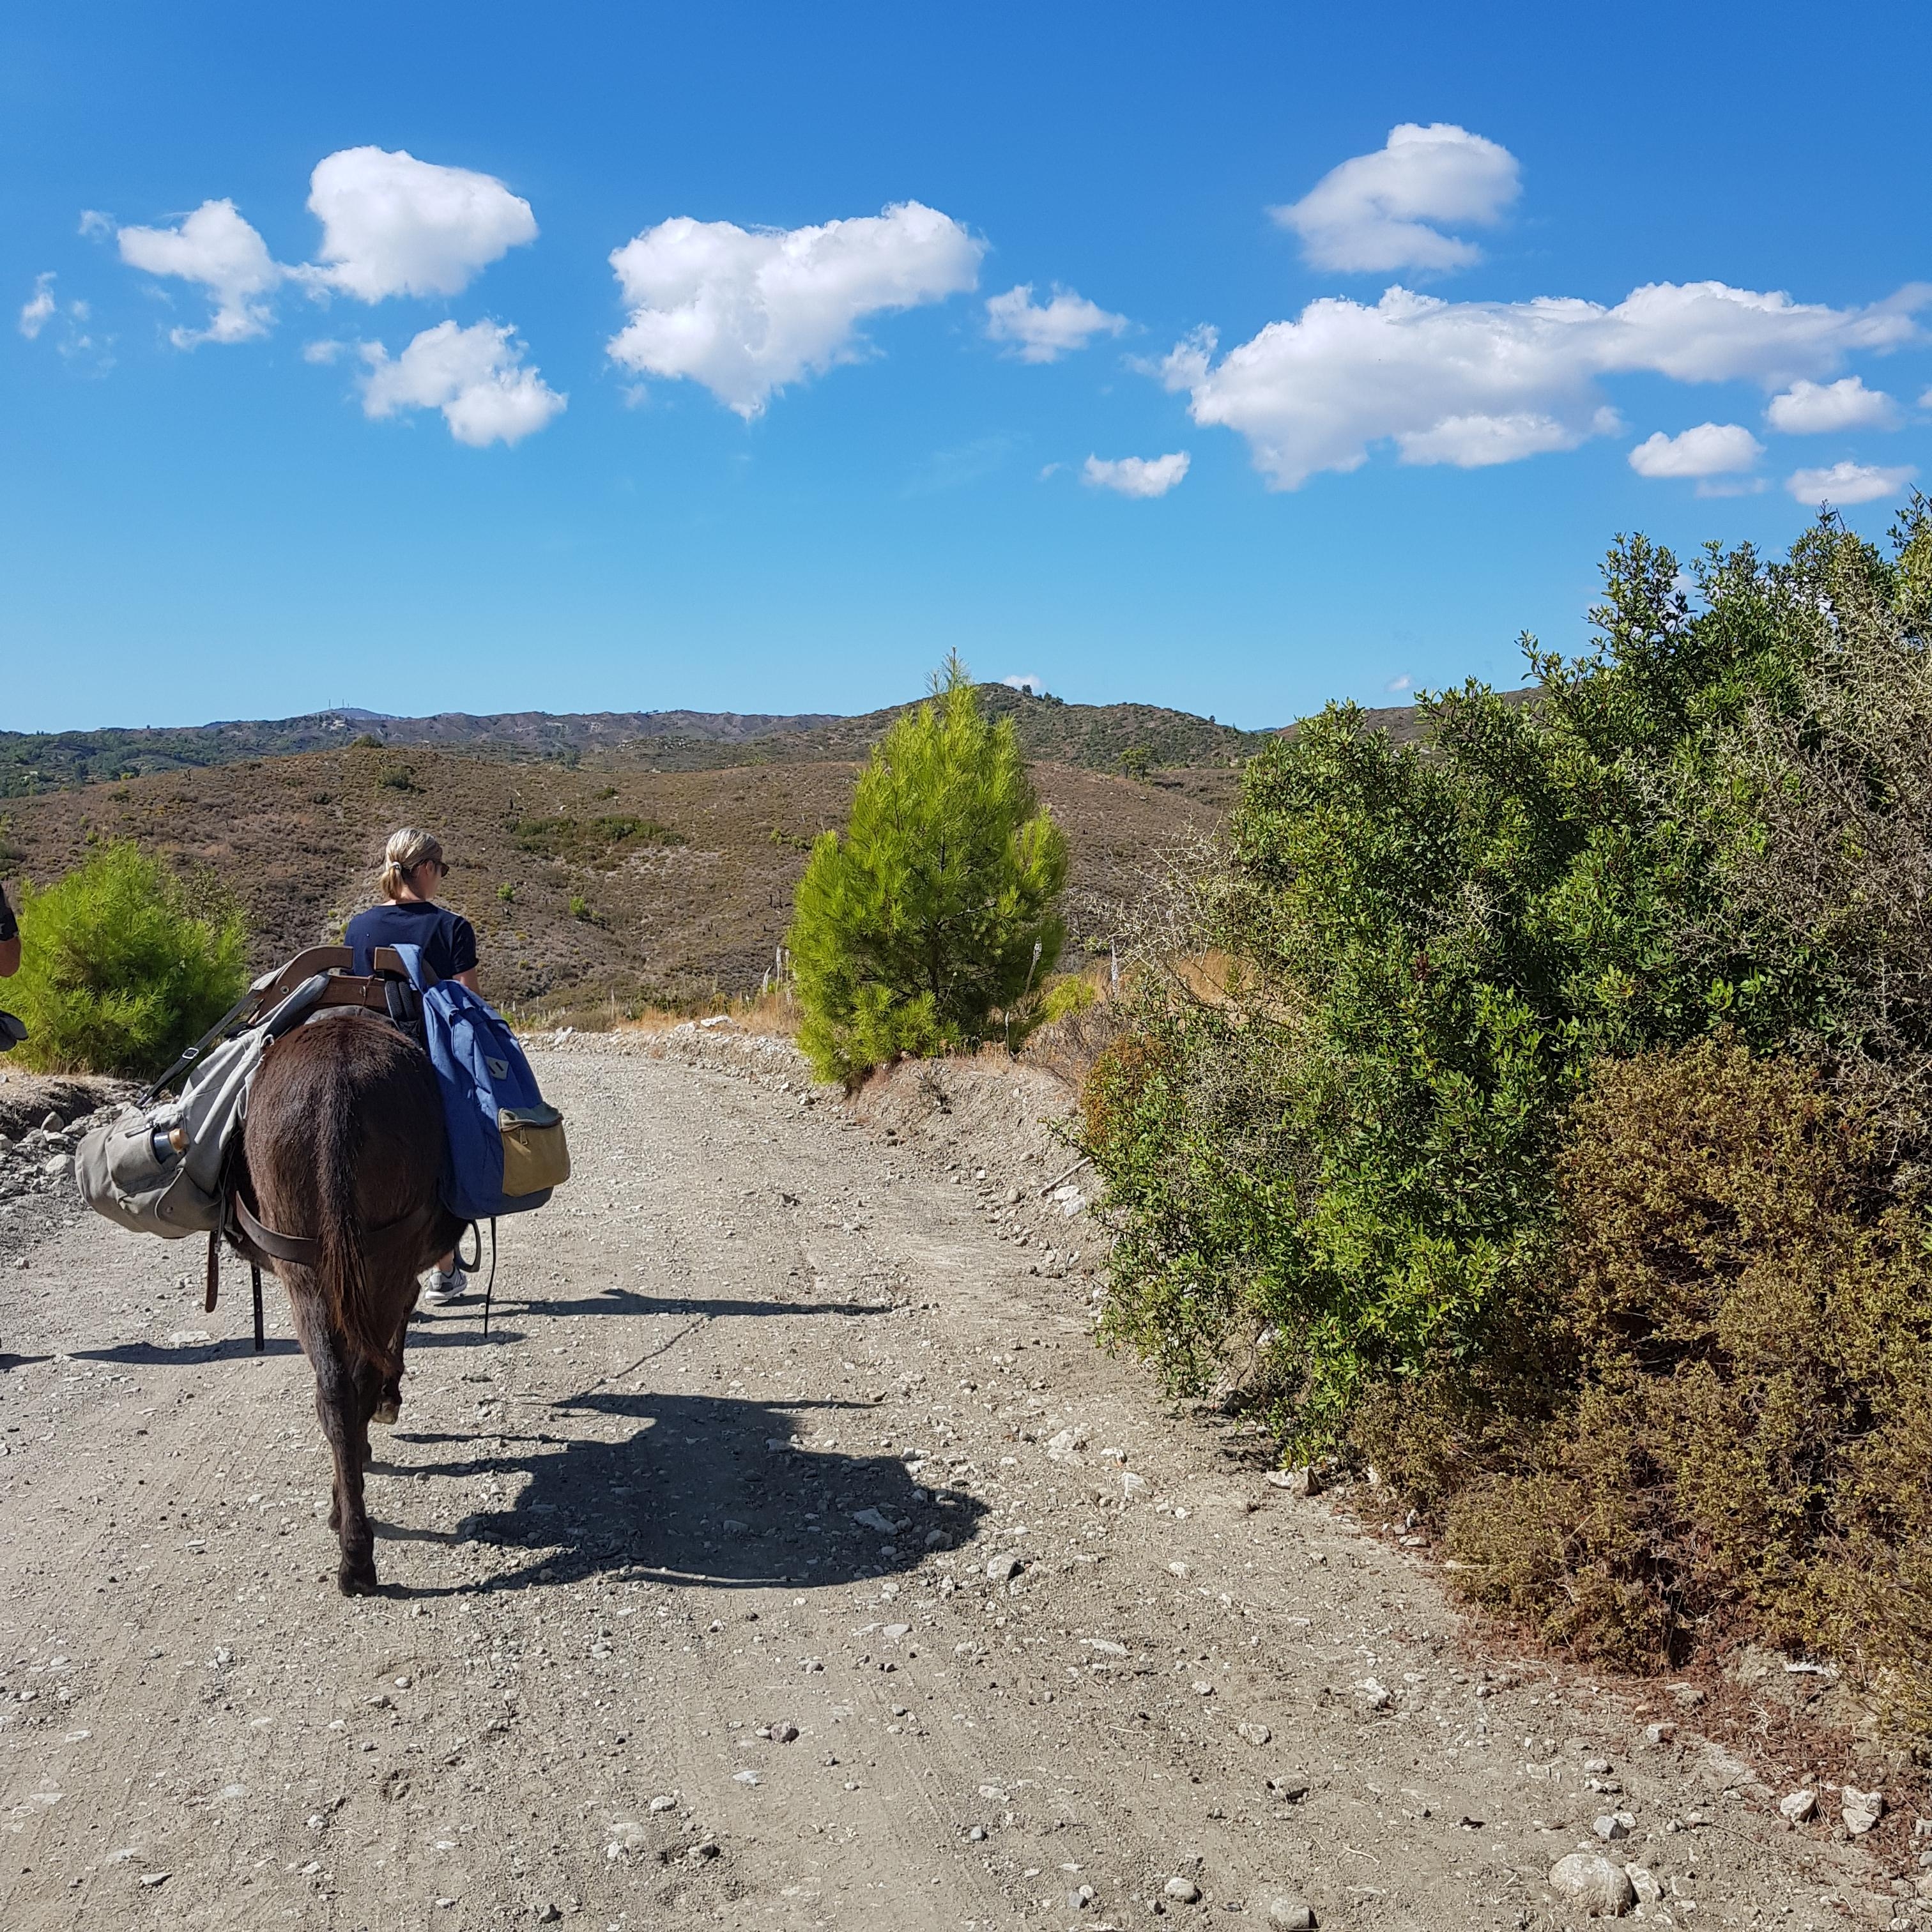 Eselwandern durchs Hinterland auf Rhodos ♡

#nature #rhodos #griechenland #esel